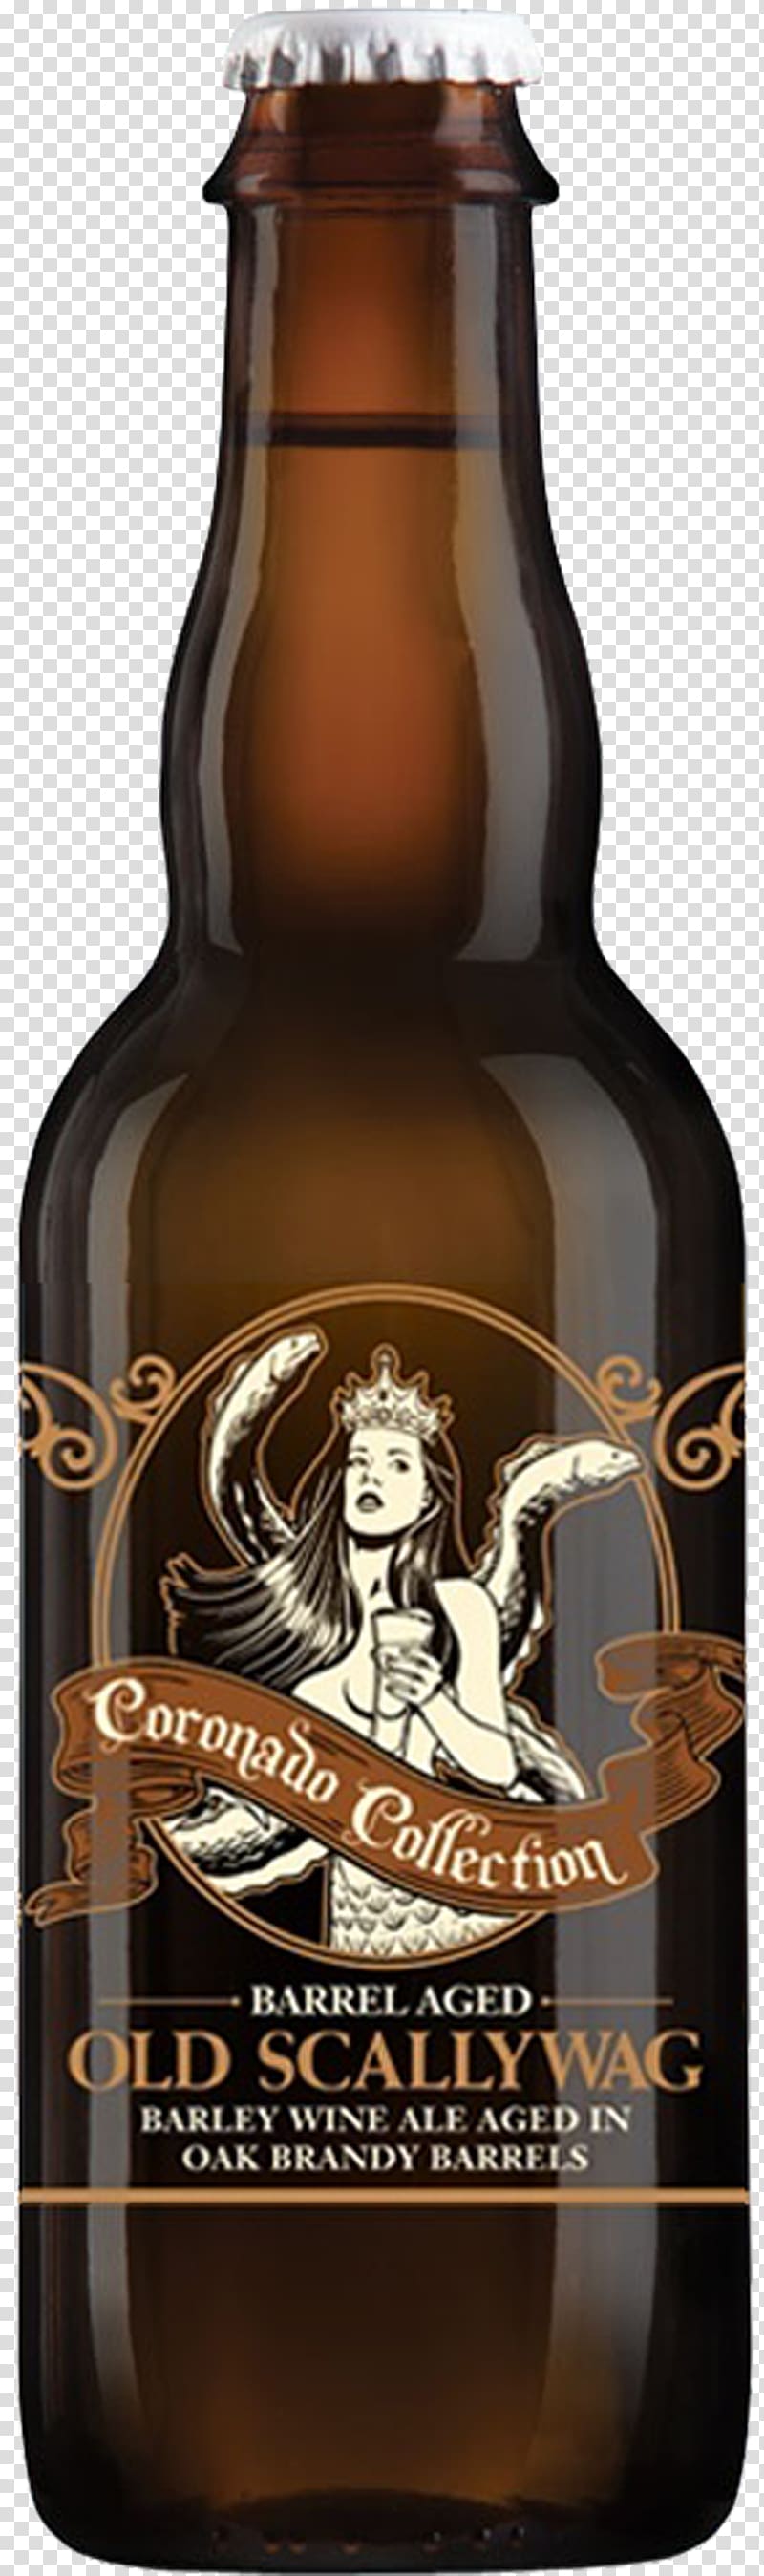 Beer bottle Spendrups Barley wine Liqueur, beer transparent background PNG clipart